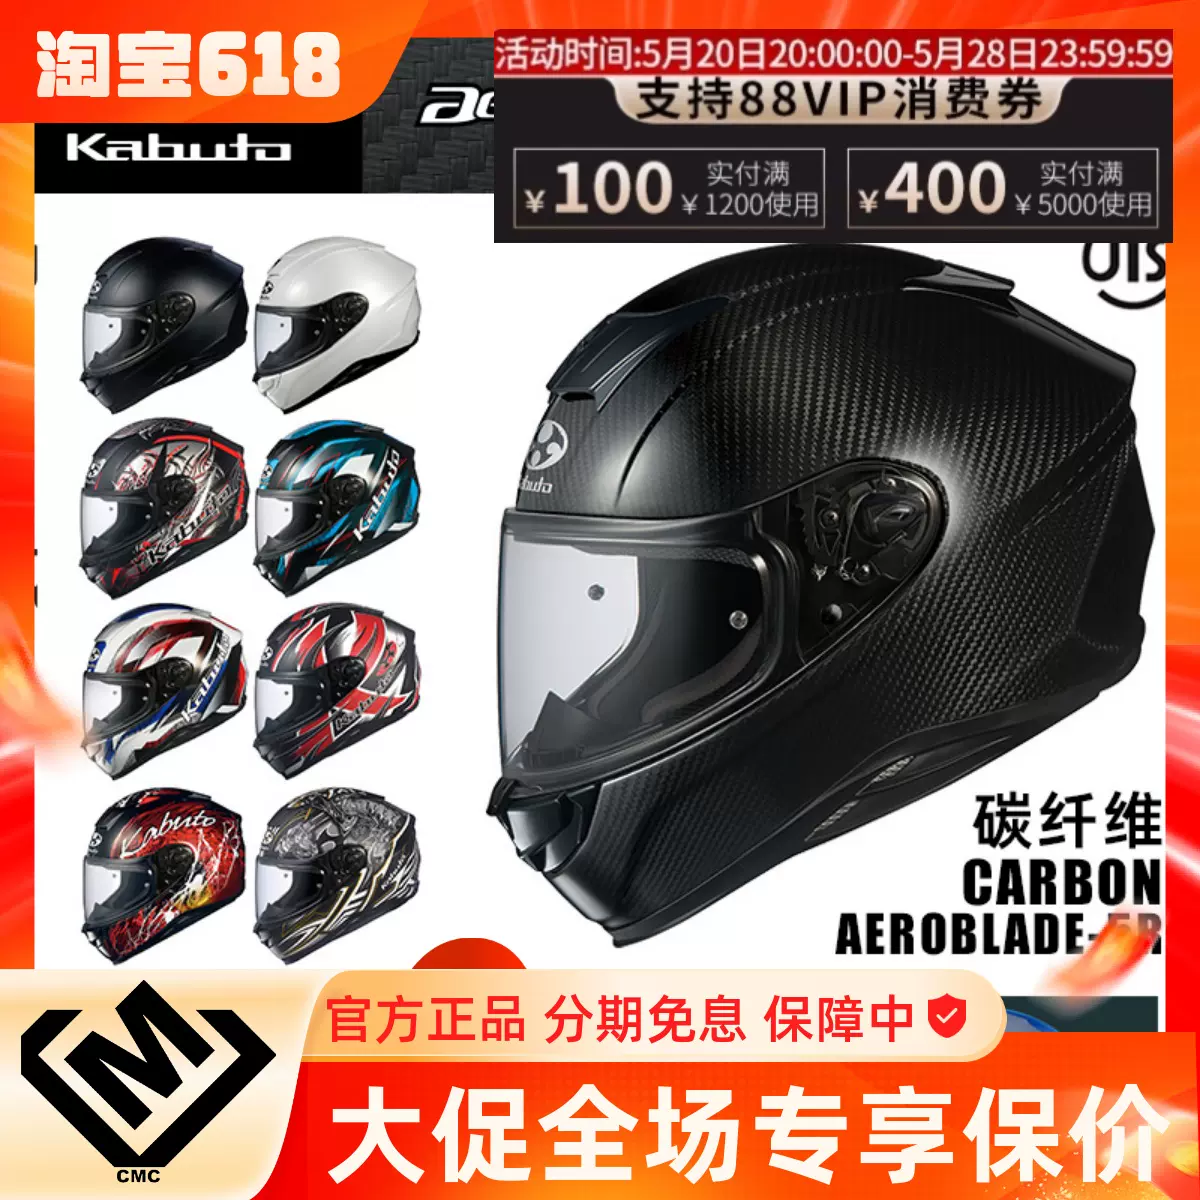 日本OGK KABUTO AEROBLADE-5/5R 空氣刀碳纖維機車安全帽全盔跑盔-Taobao